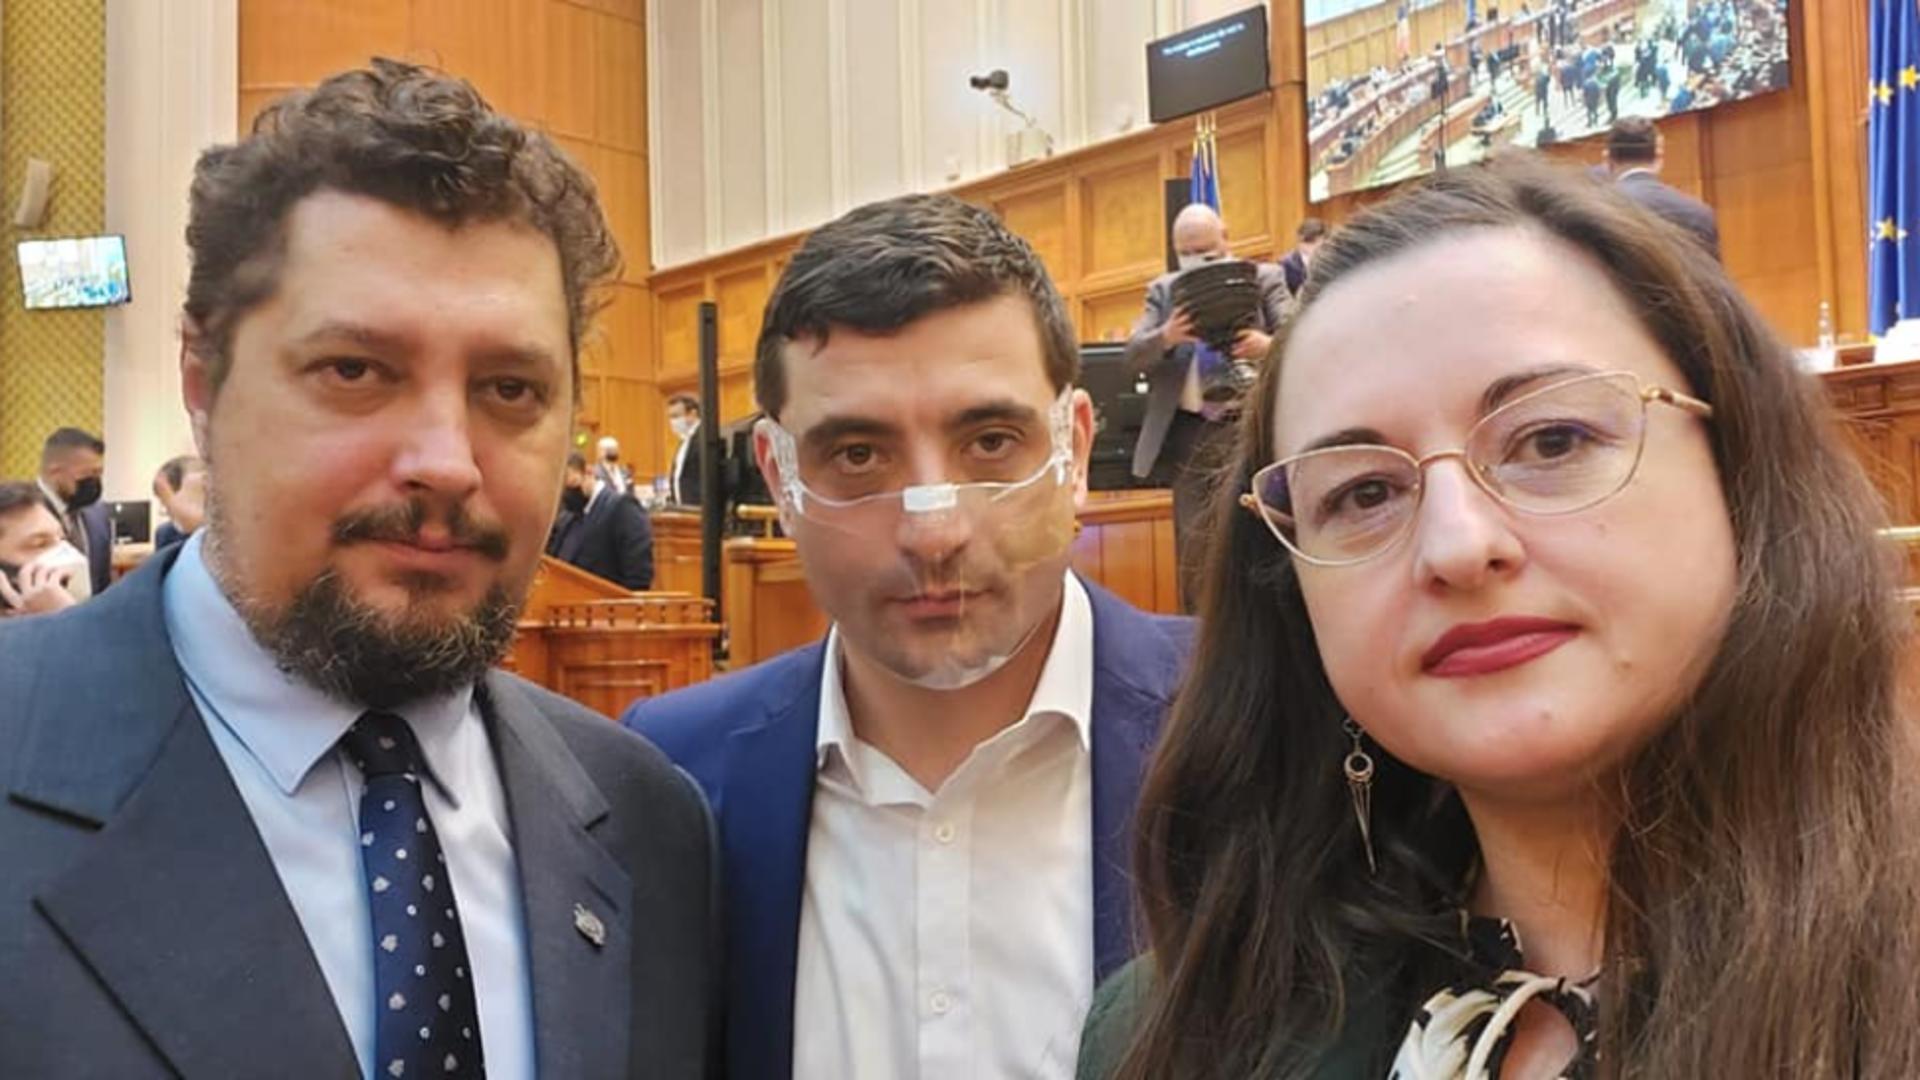 Clausiu Târziu, George Simion și Rodica Boancă / Facebook Rodica Boancă